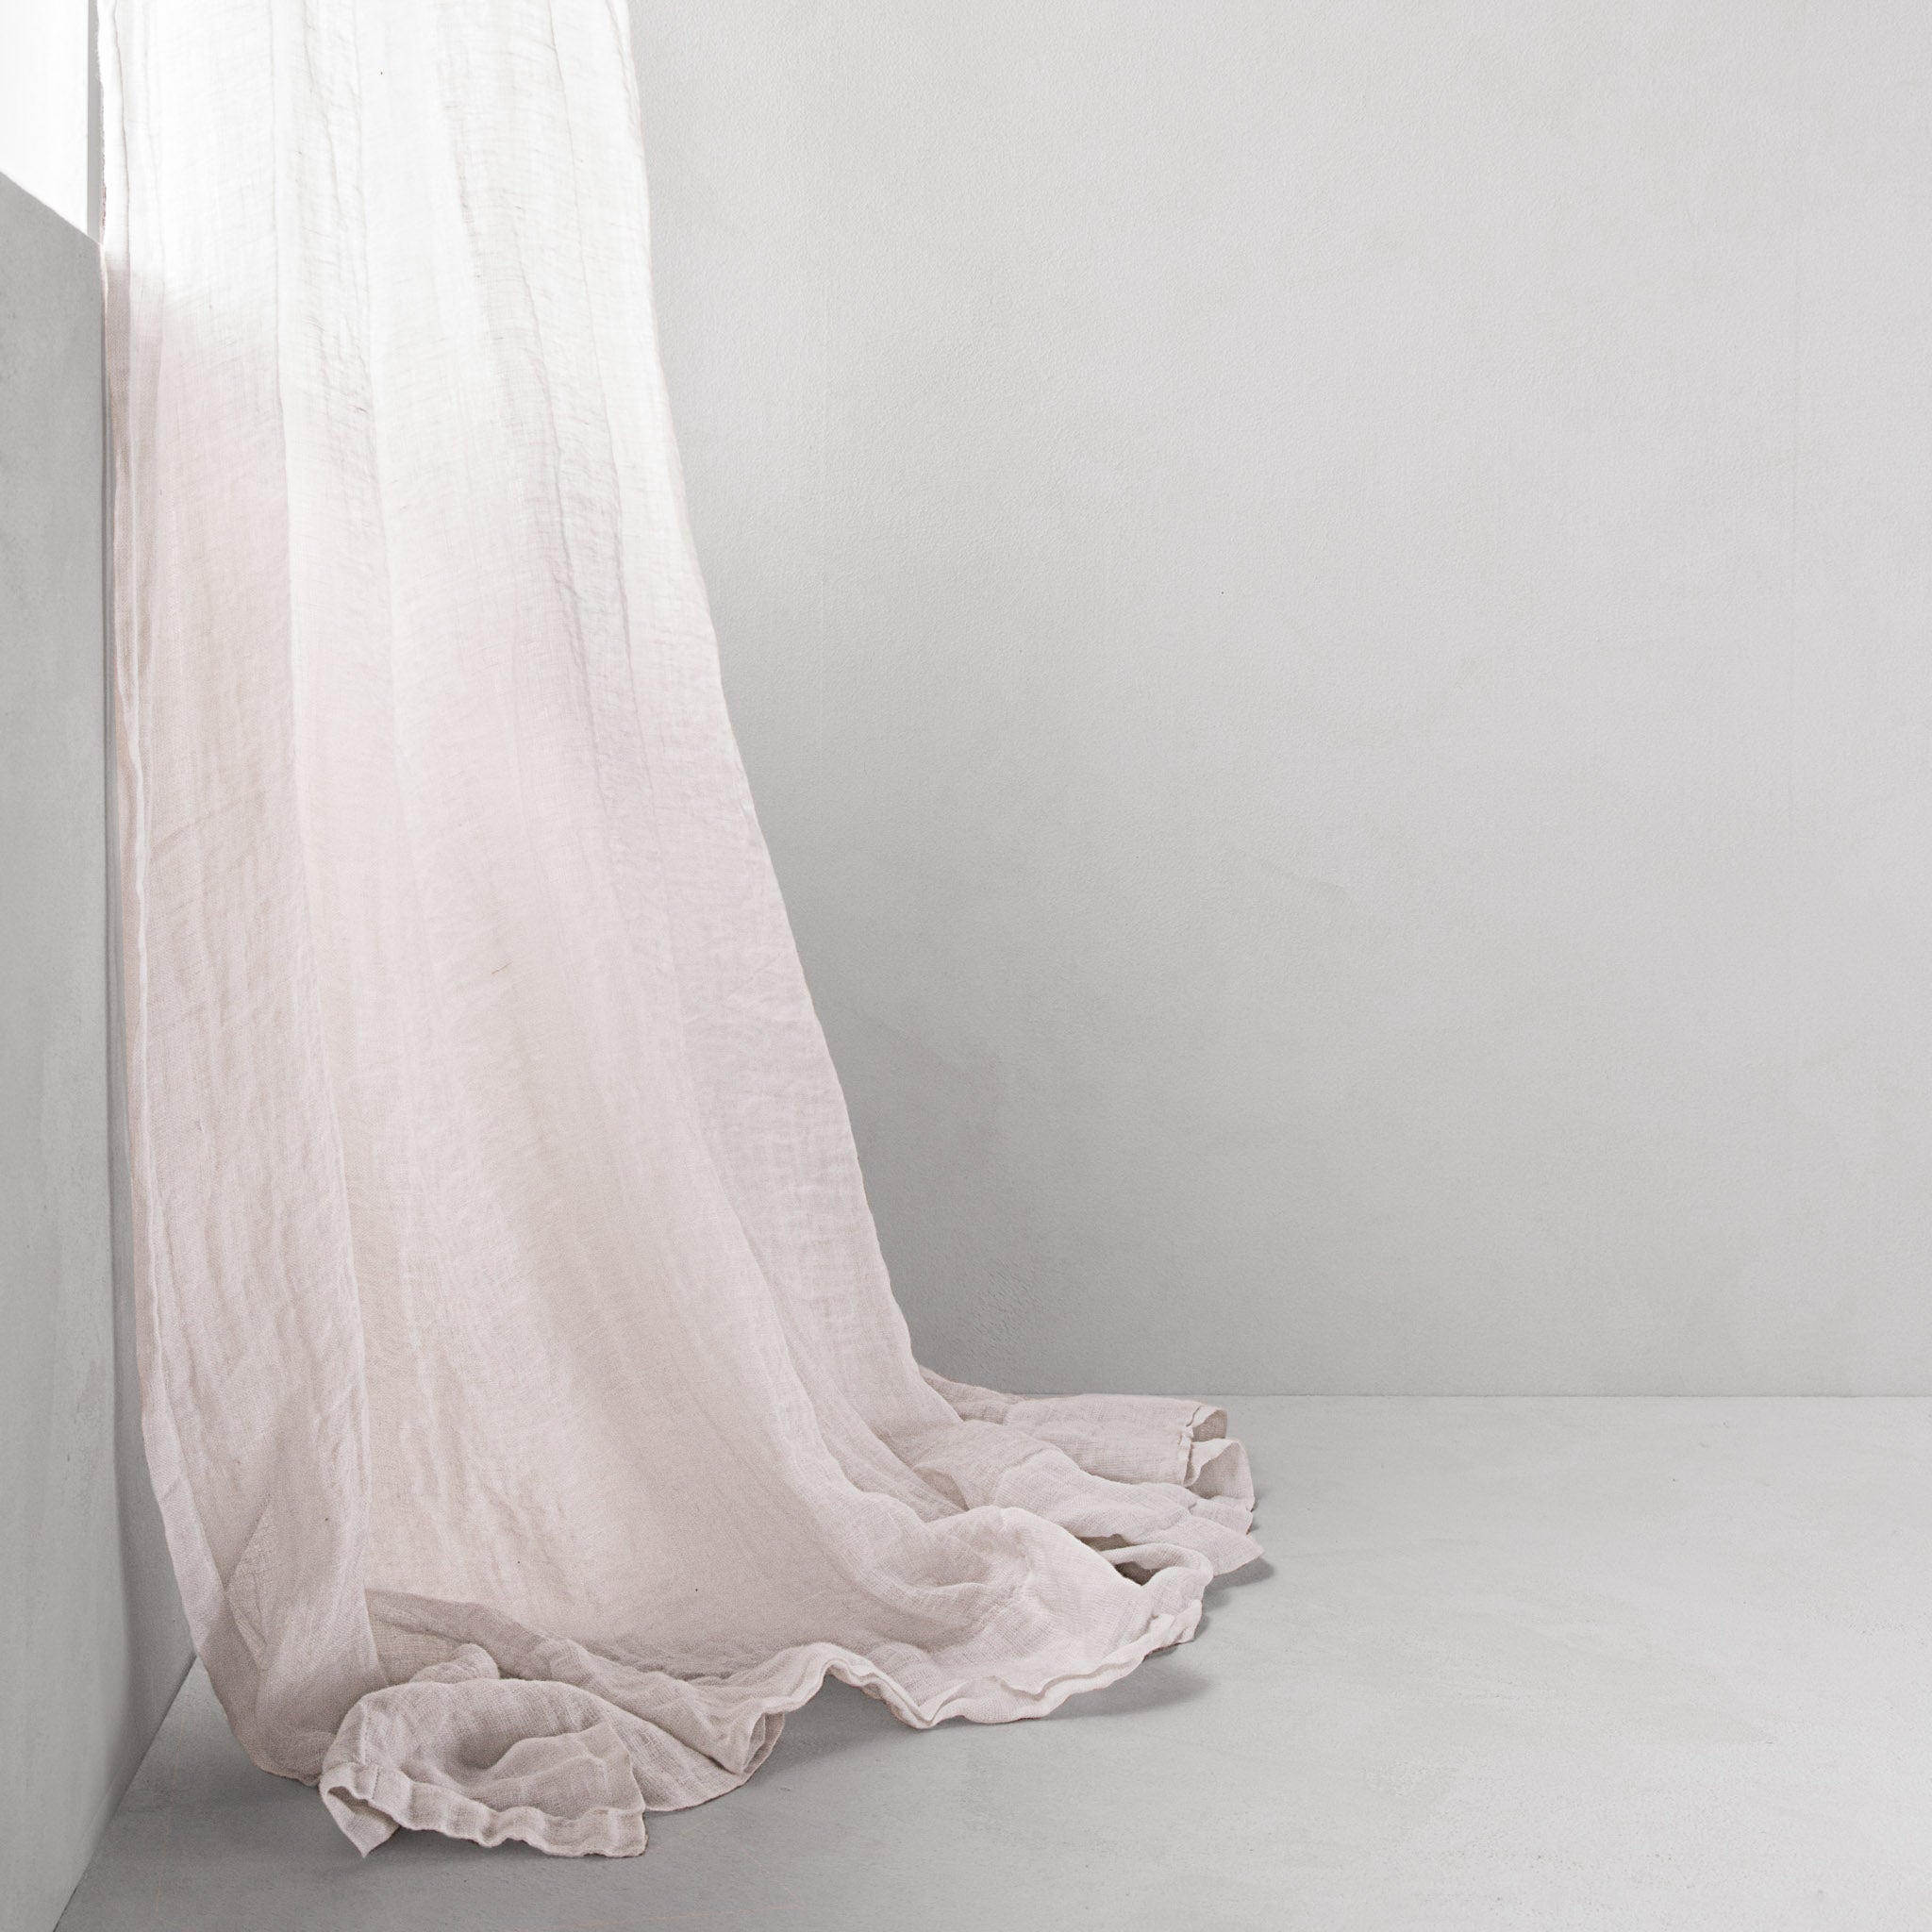 Linen Curtains | Antique White Sheer  | Hale Mercantile Co.